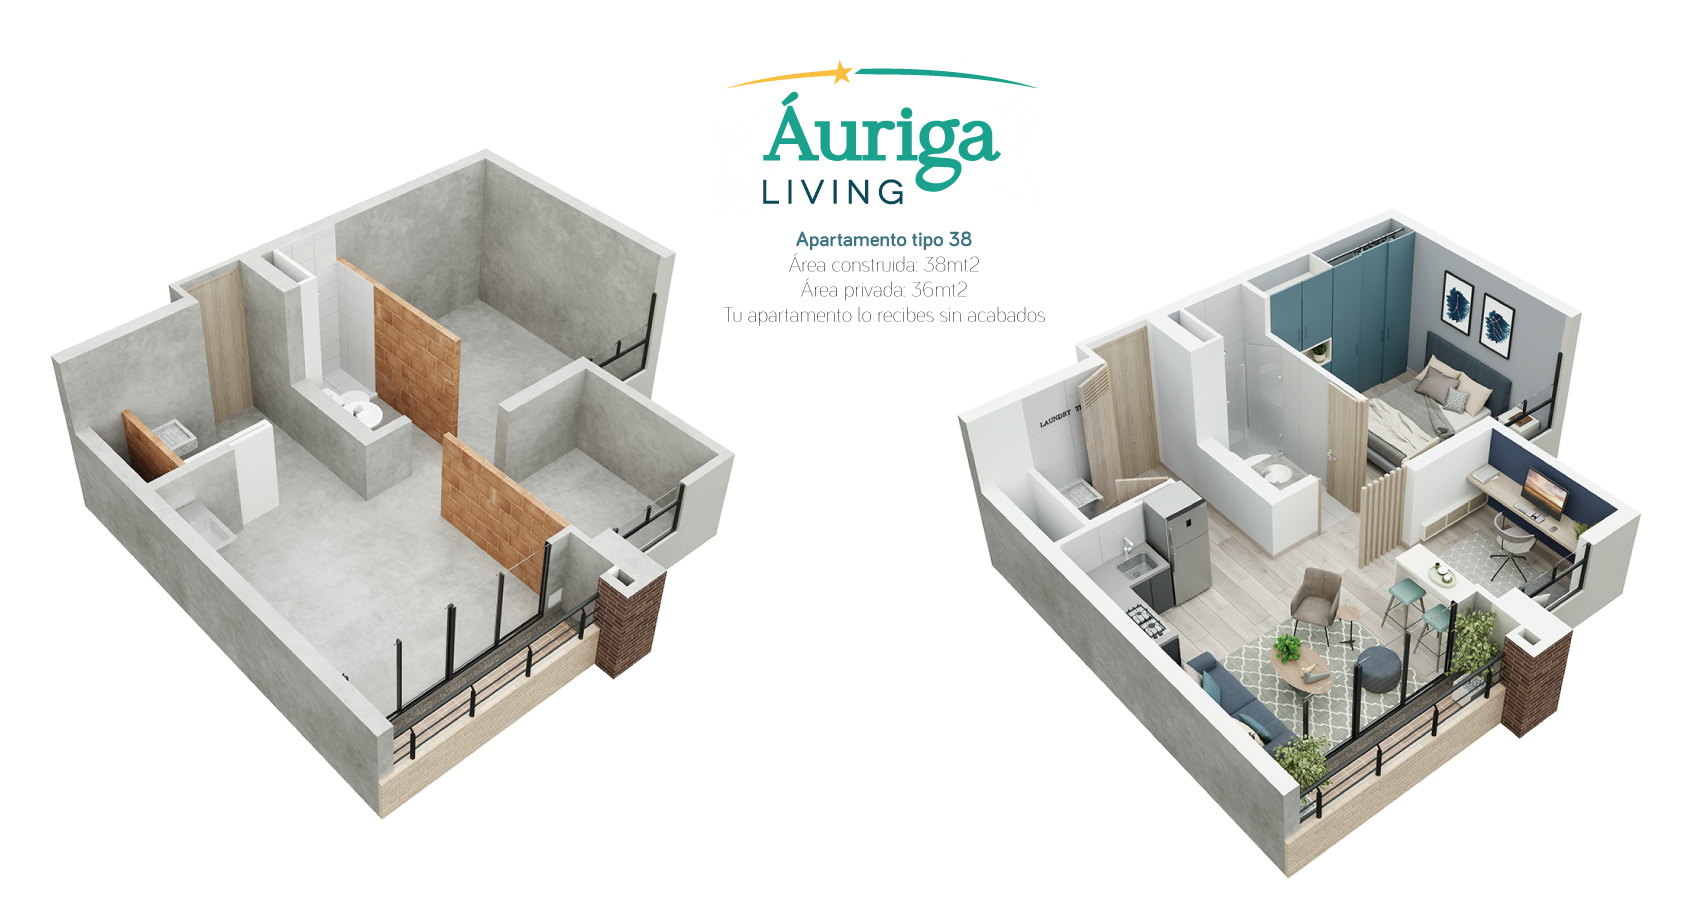 Auriga Living apartamentos con subsidio de vivienda al norte de bogota 